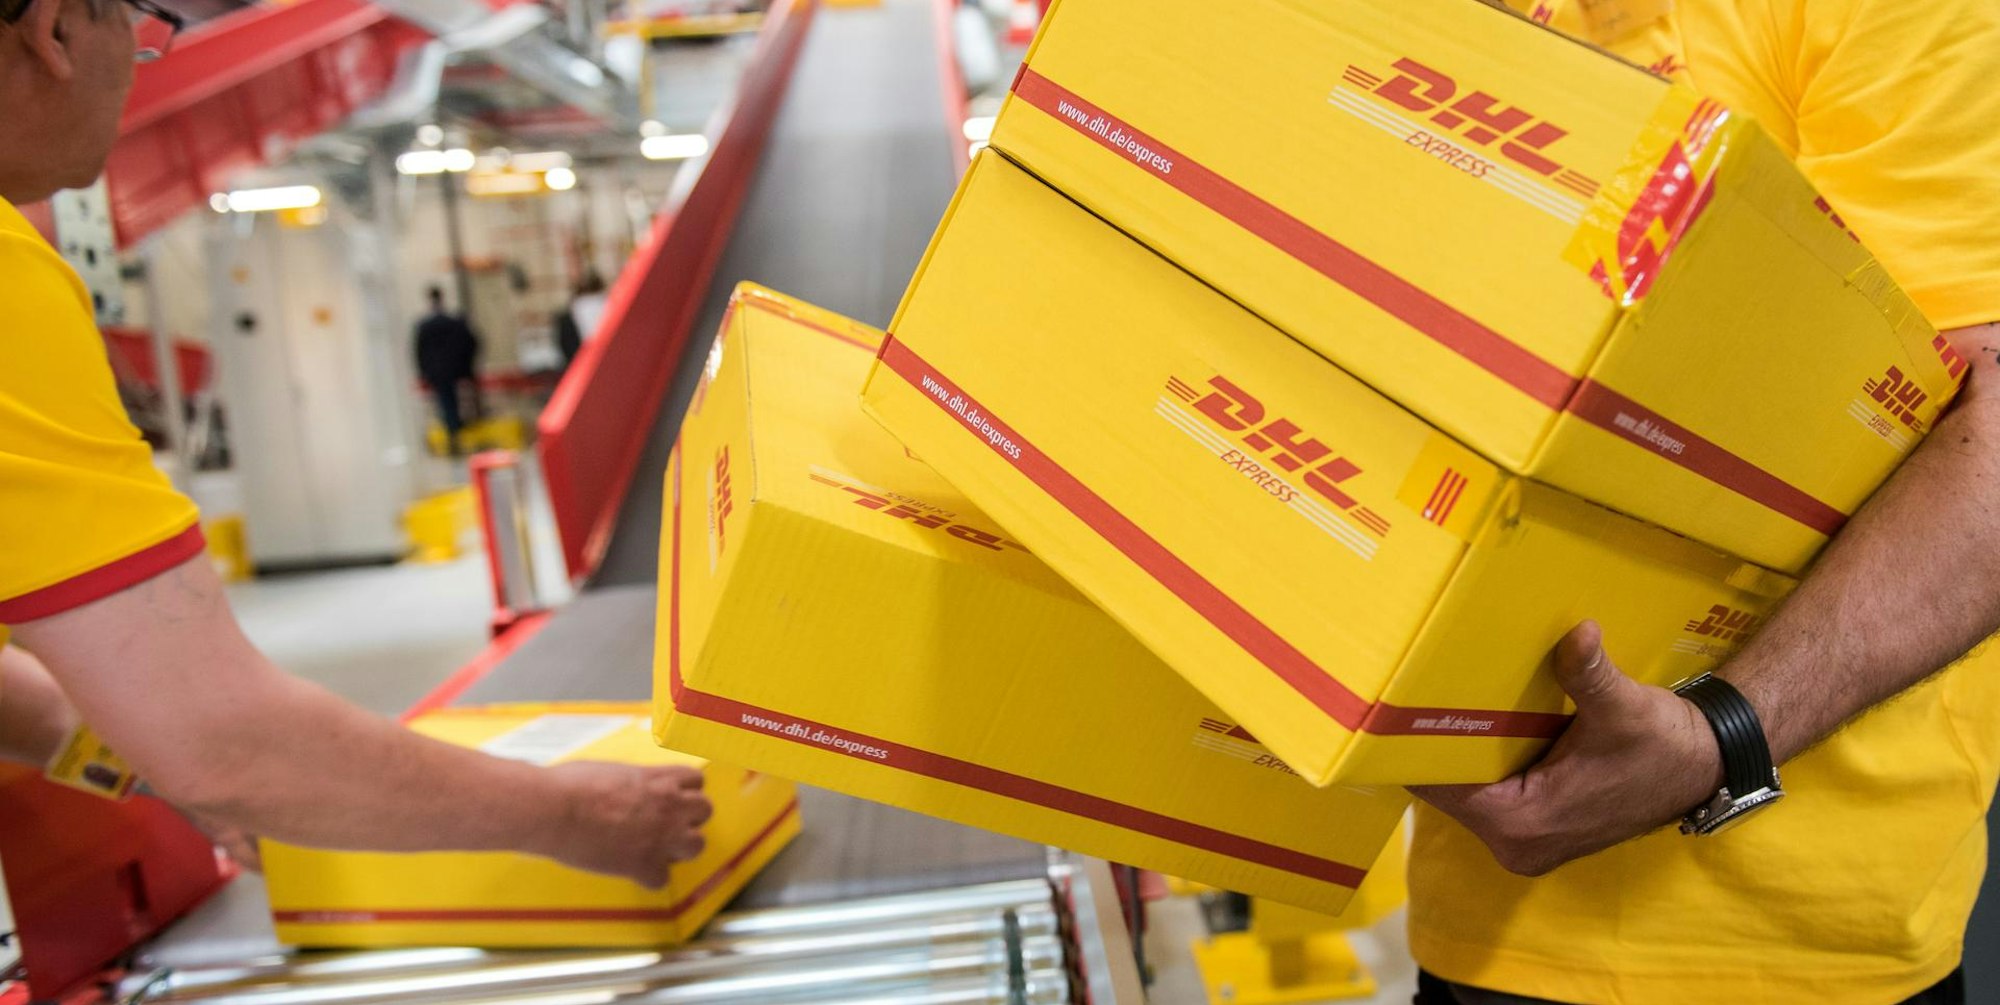 Paket_DHL_Deutsche Post